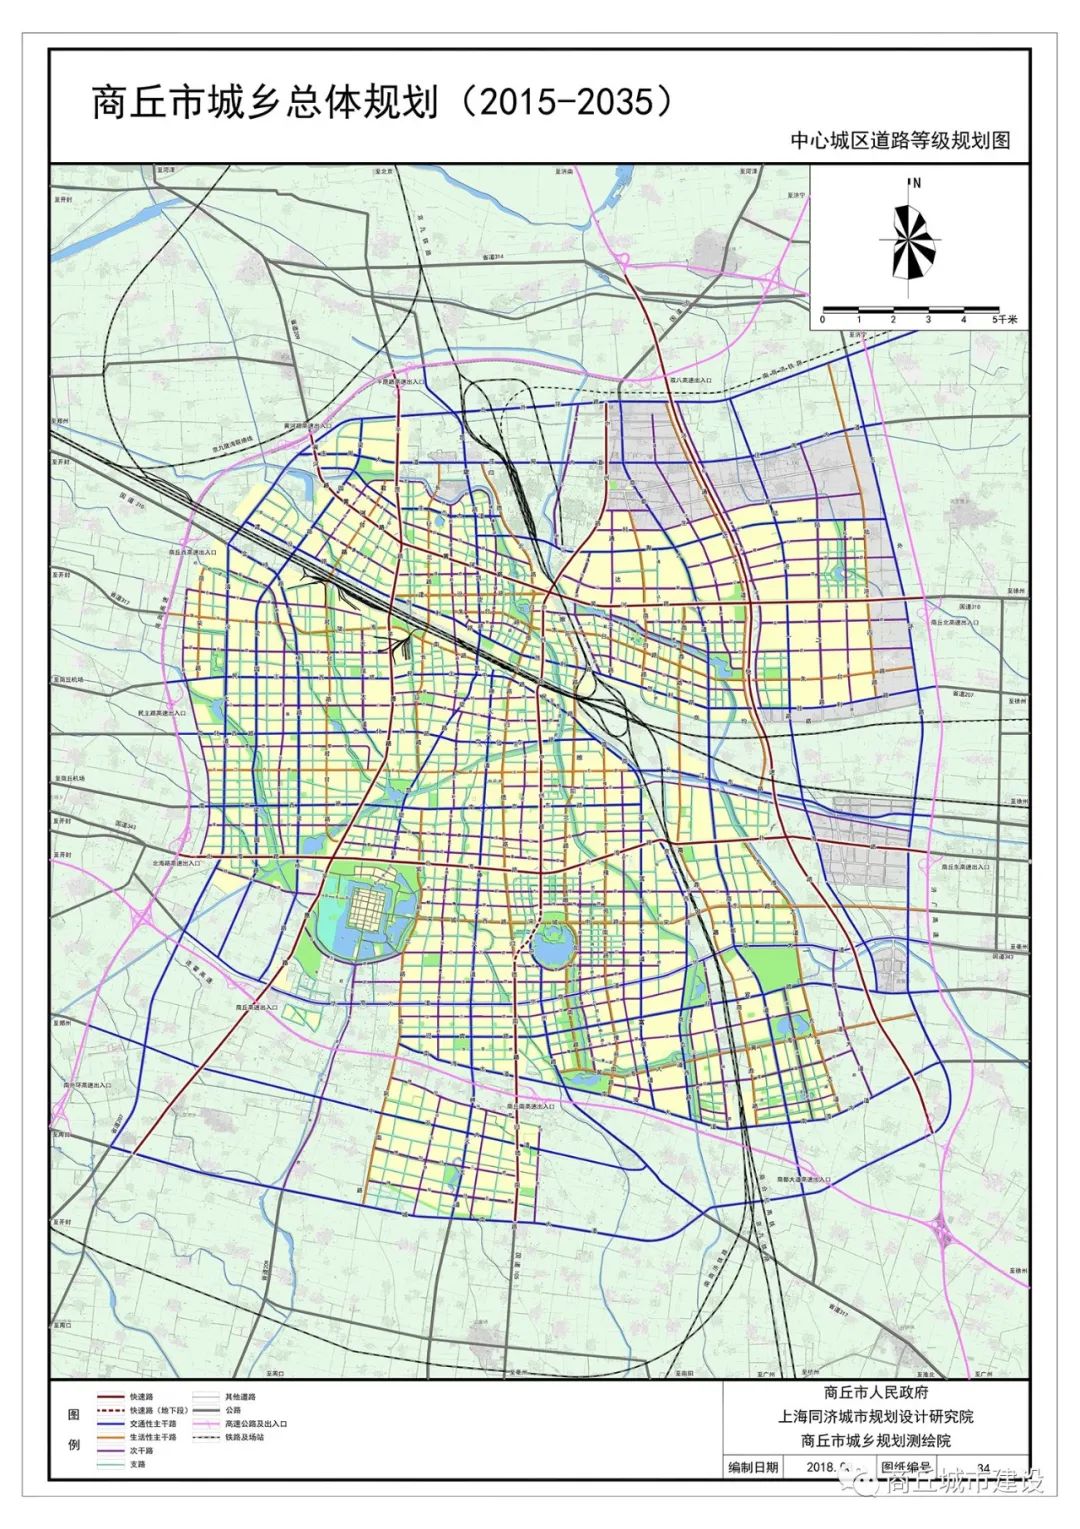 商丘市城乡总体规划(2015